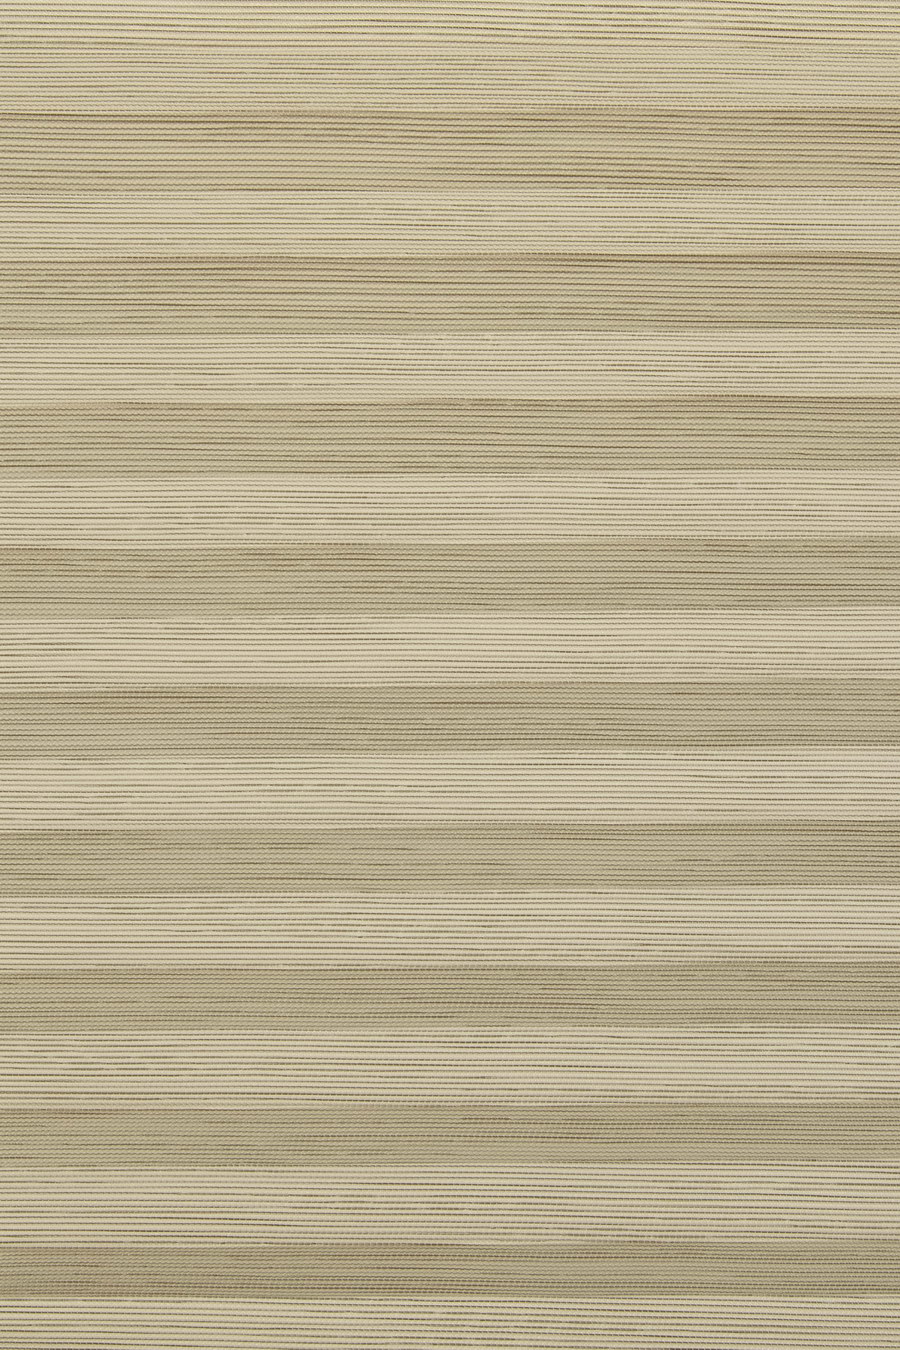 Ткань PORTO PEARL linen-beige 7780 для штор плиссе